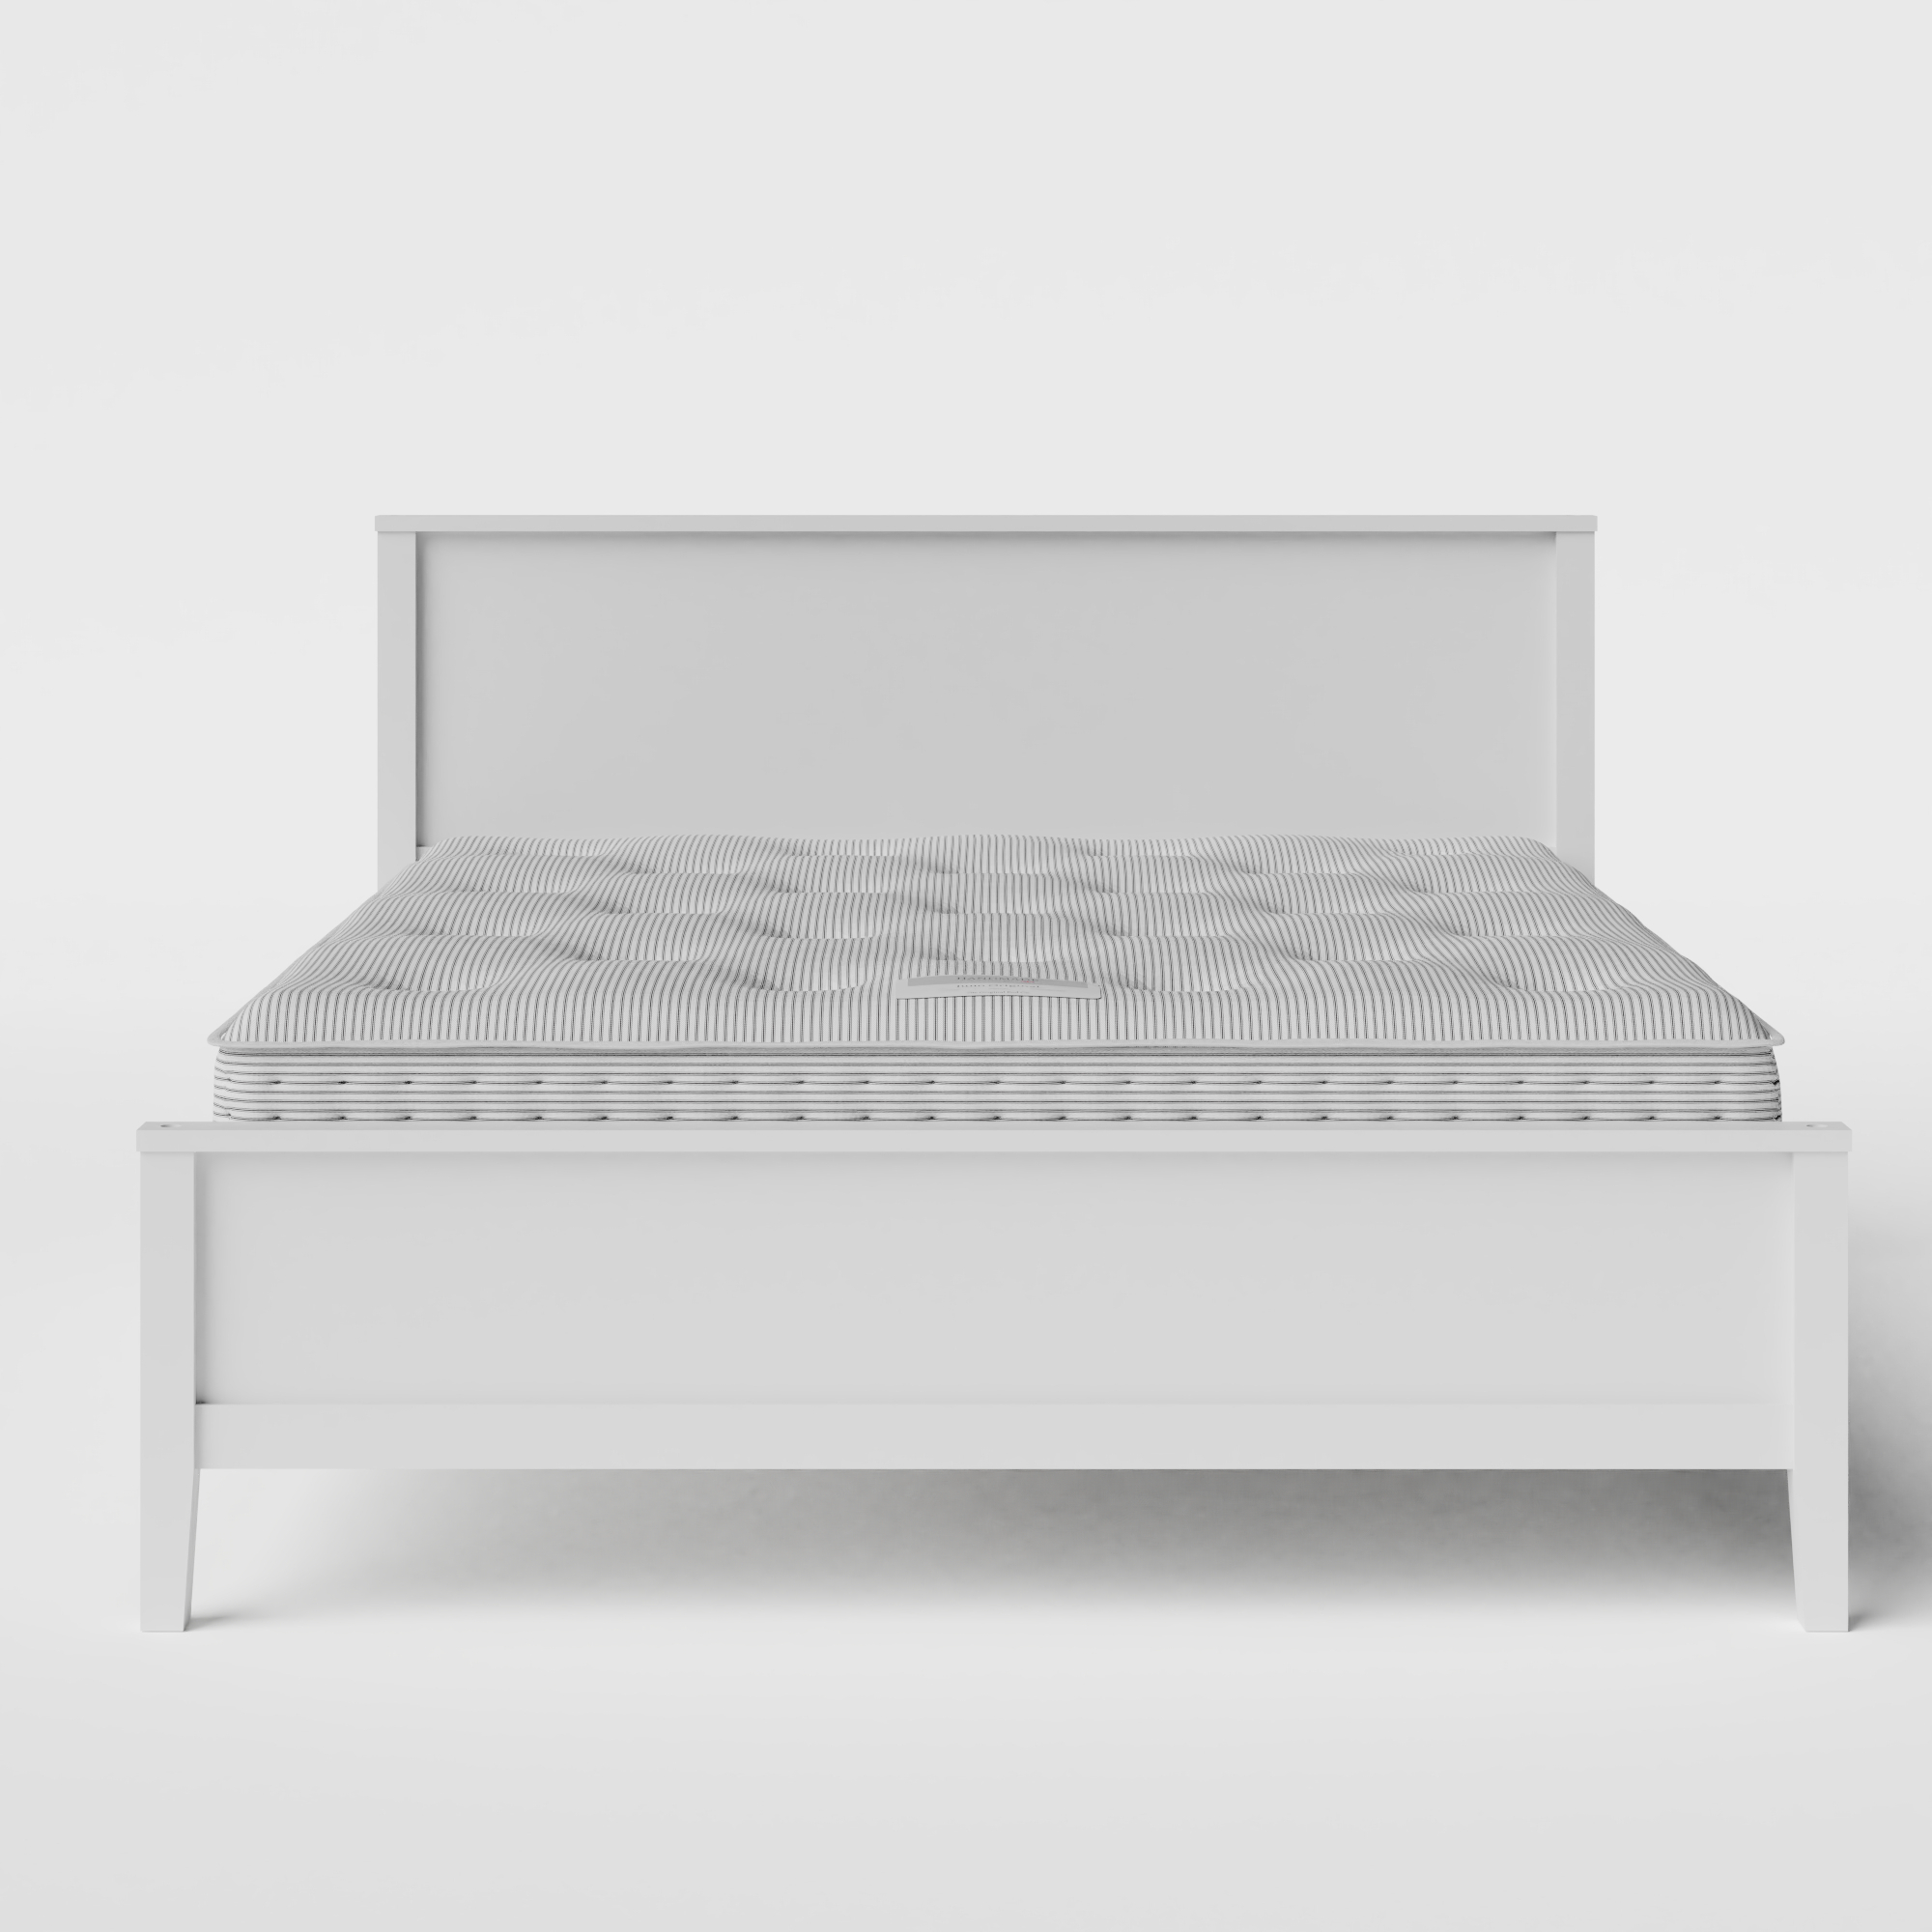 Ramsay Painted letto in legno bianco con materasso